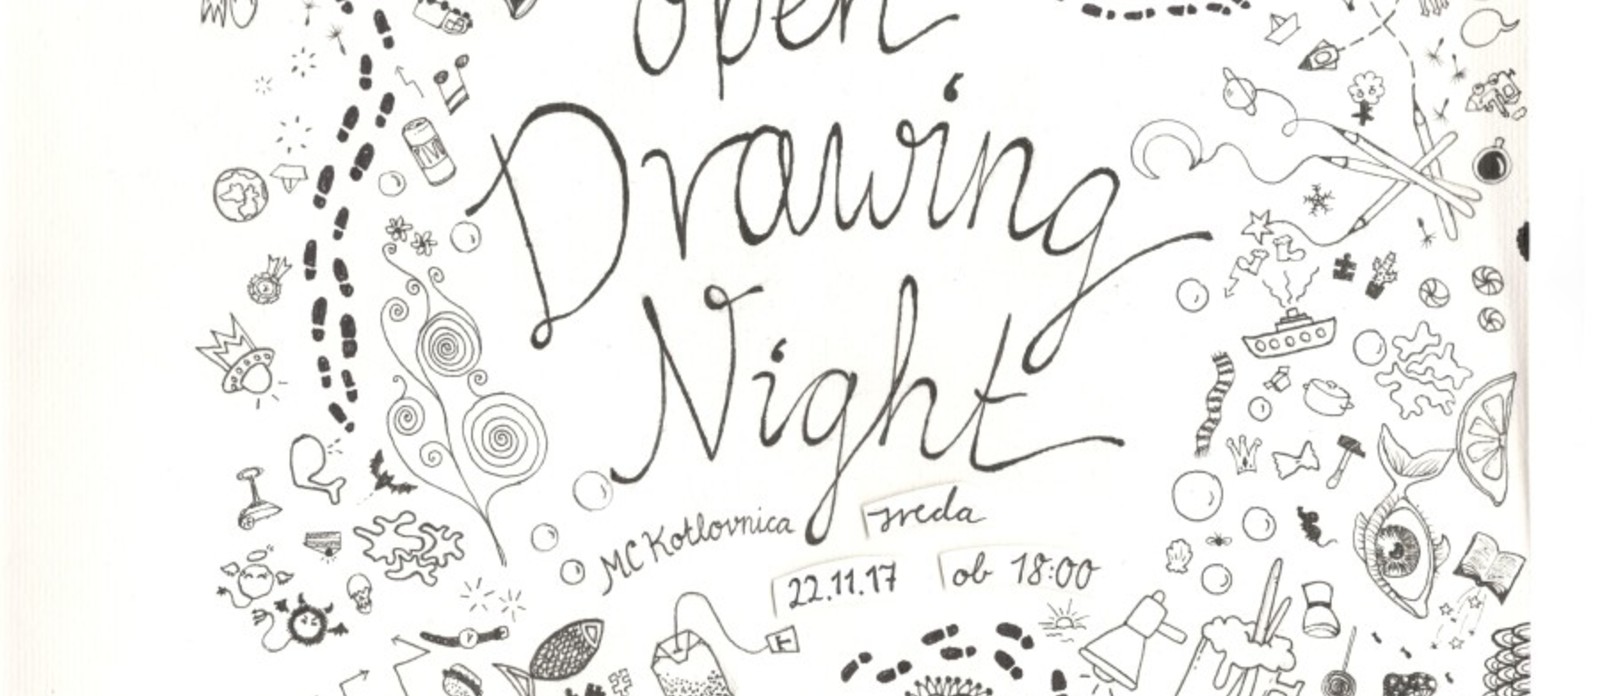 Open drawing night / Odprti termin za risanje